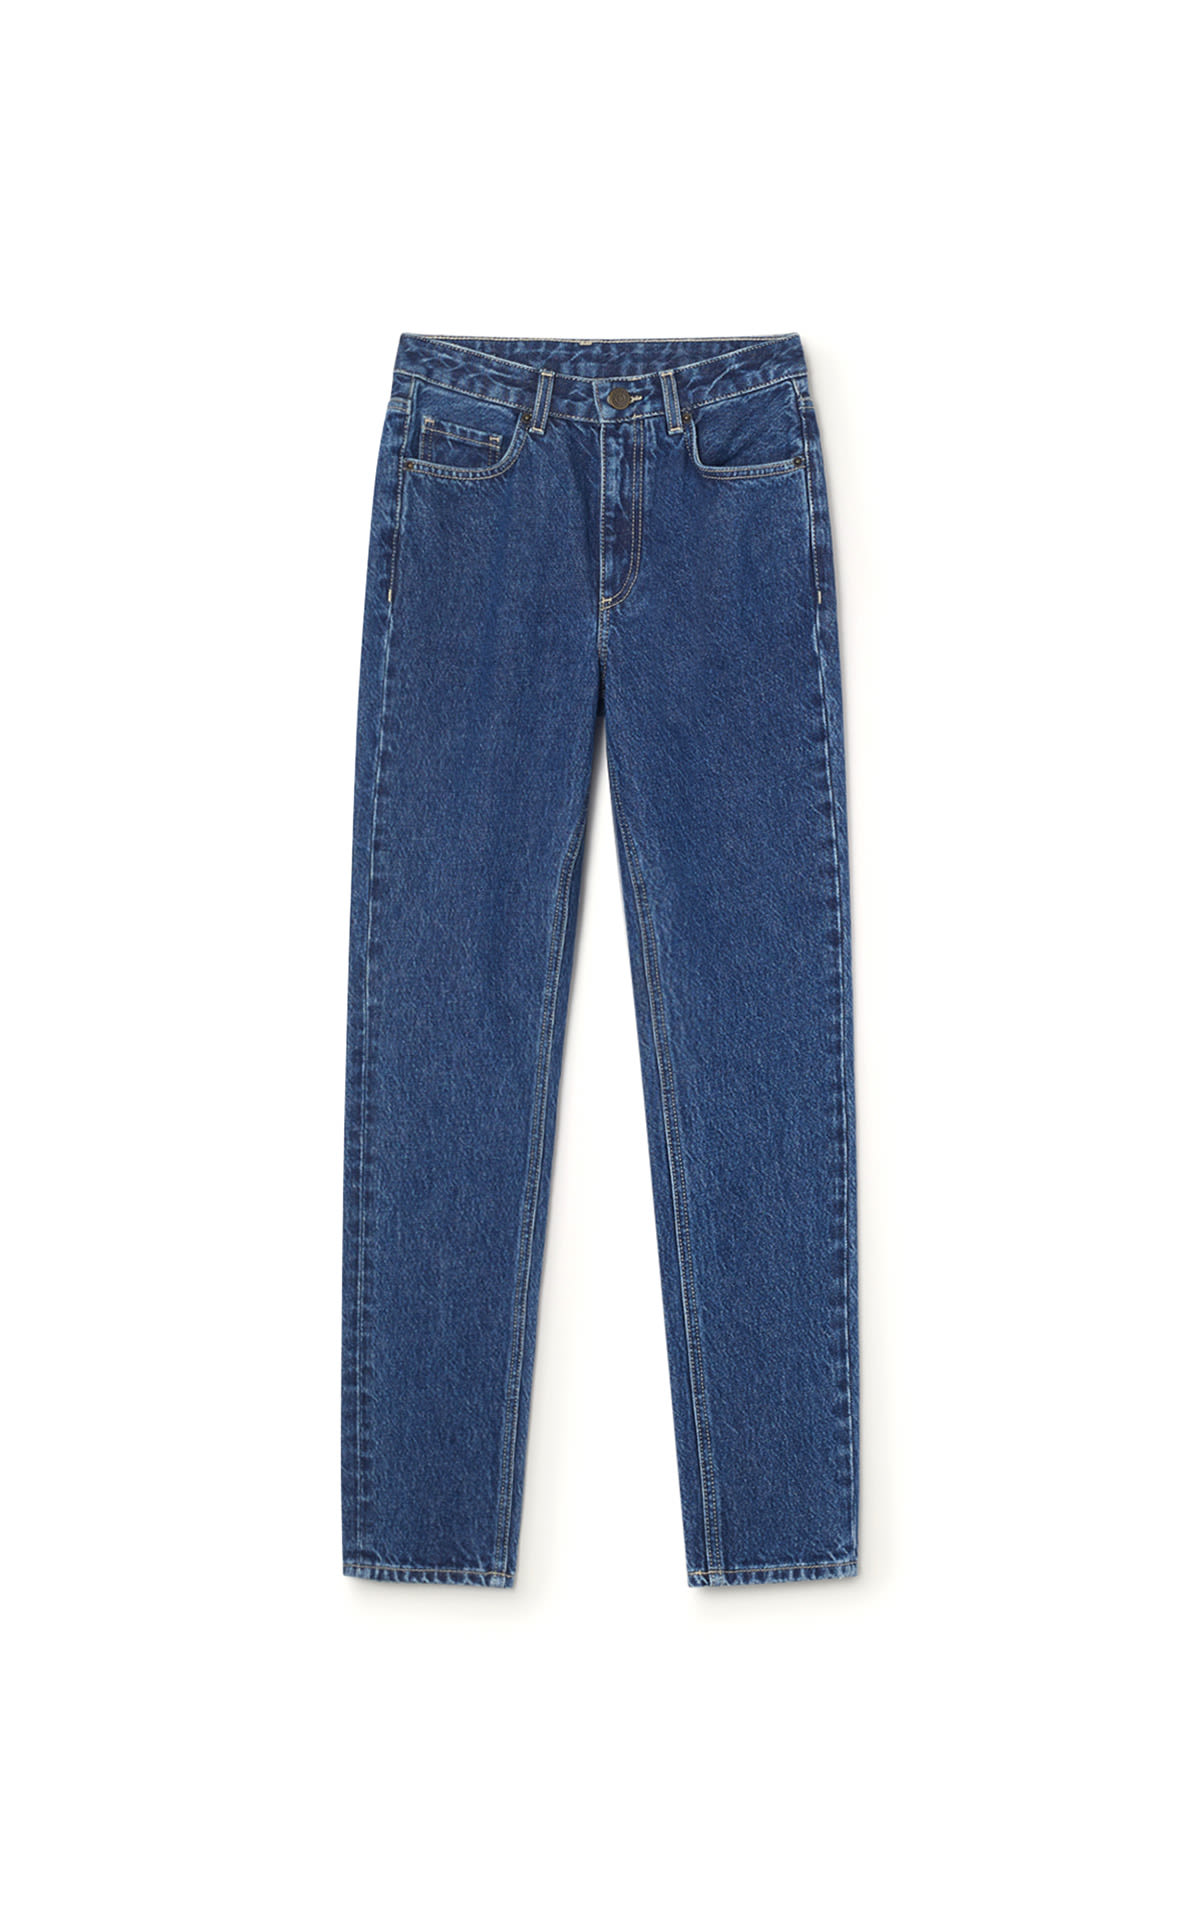 American Vintage long jean pants